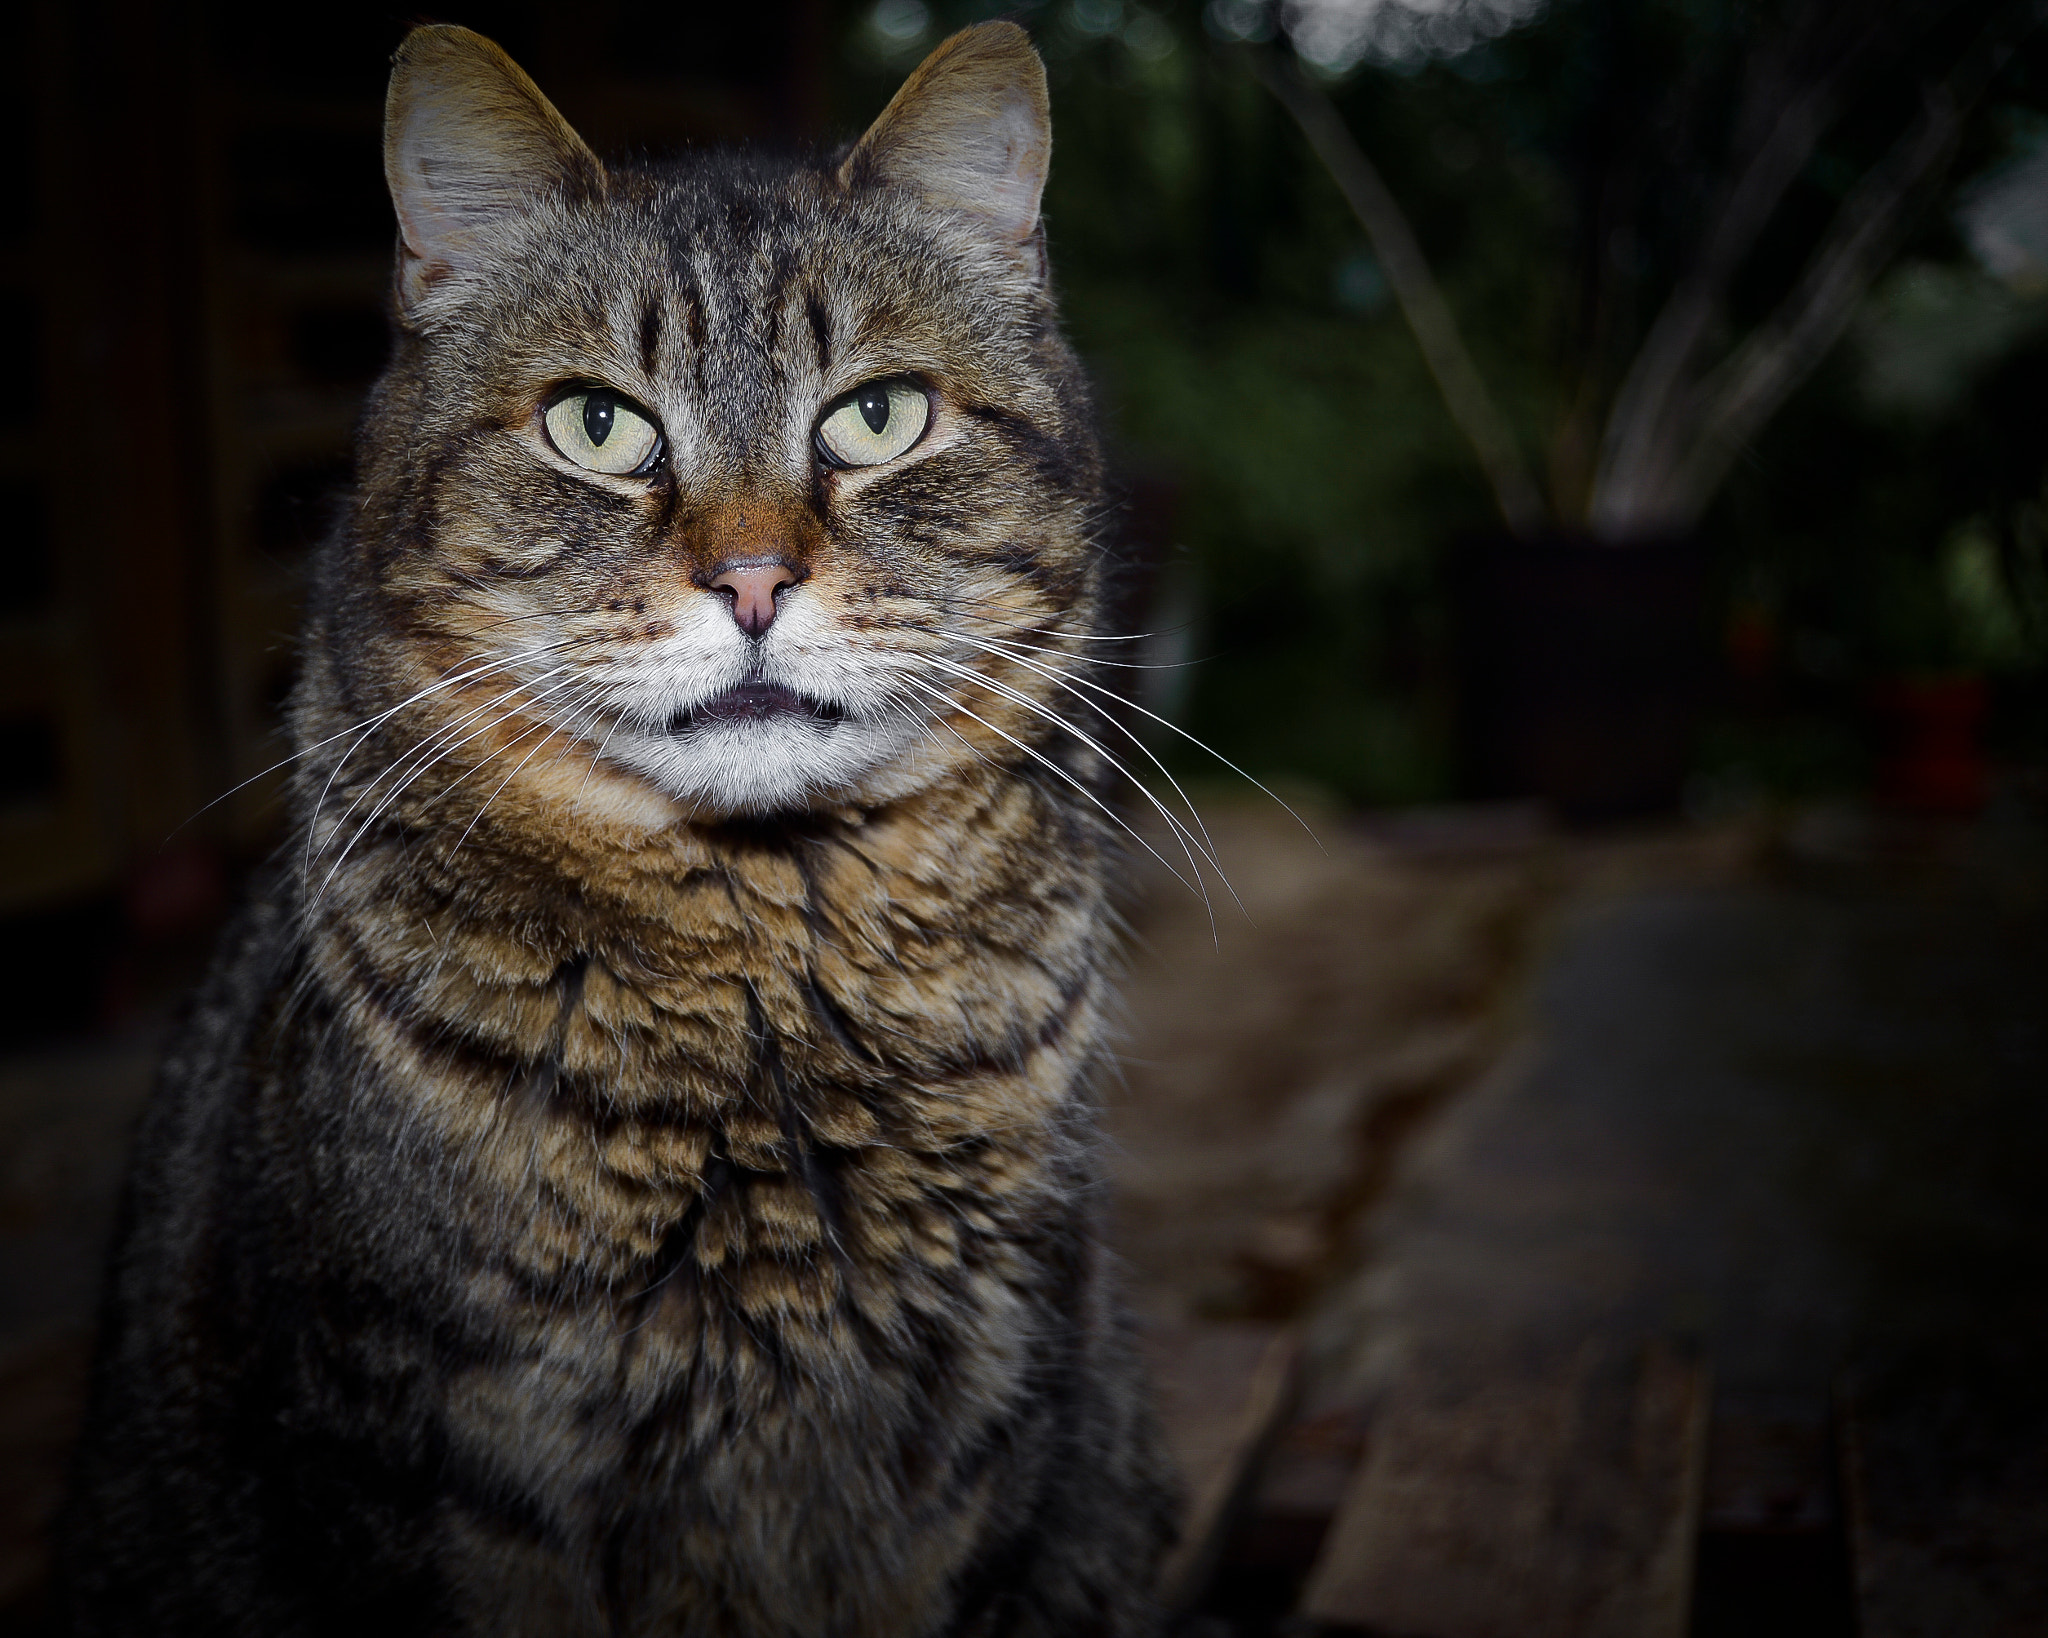 Nikon D600 + Nikon AF-S DX Nikkor 18-55mm F3.5-5.6G II sample photo. A portrait of a cat photography